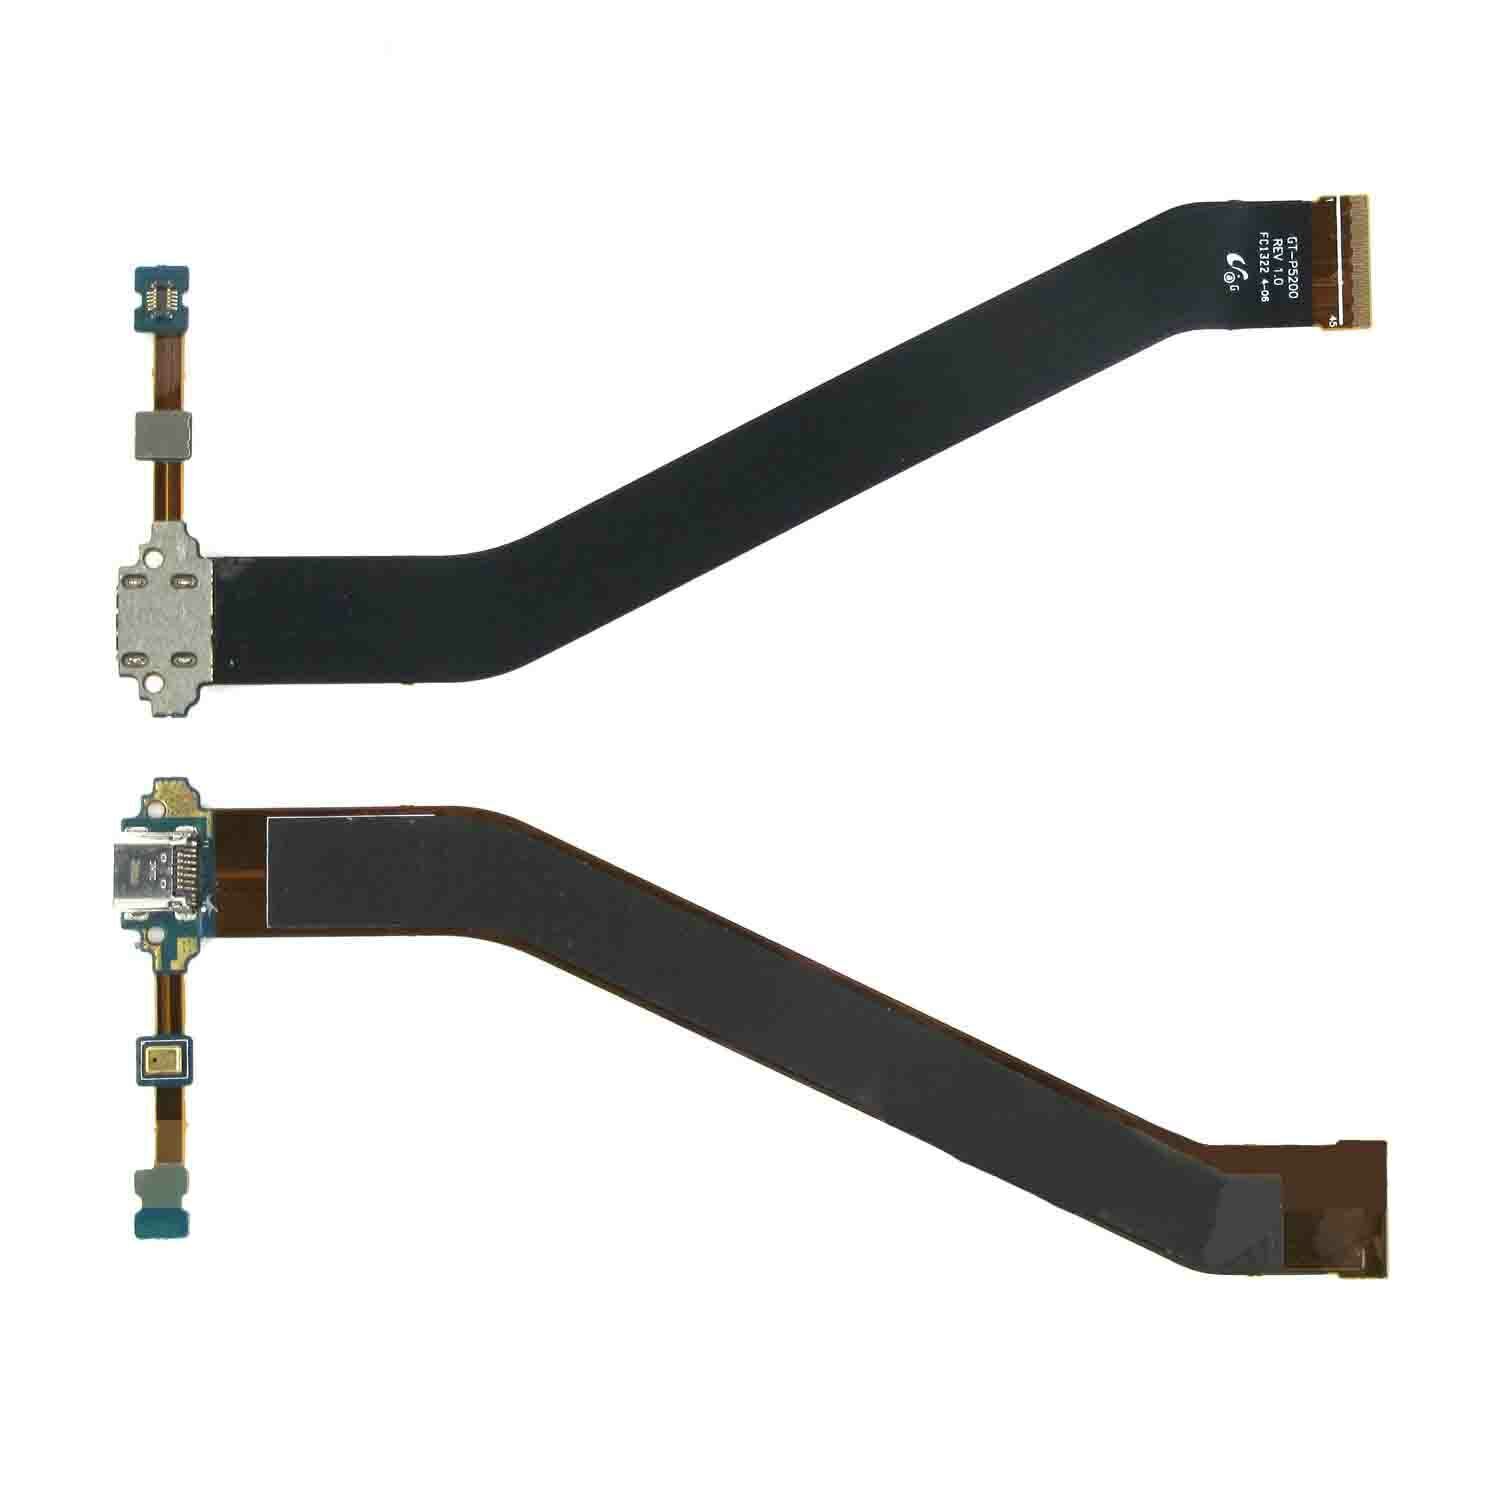 2X USB Charging Port Flex Cable For Samsung Galaxy Tab 3 10.1 GT-P5200 GT-P5210 Unbranded REV 1.0 - фотография #2